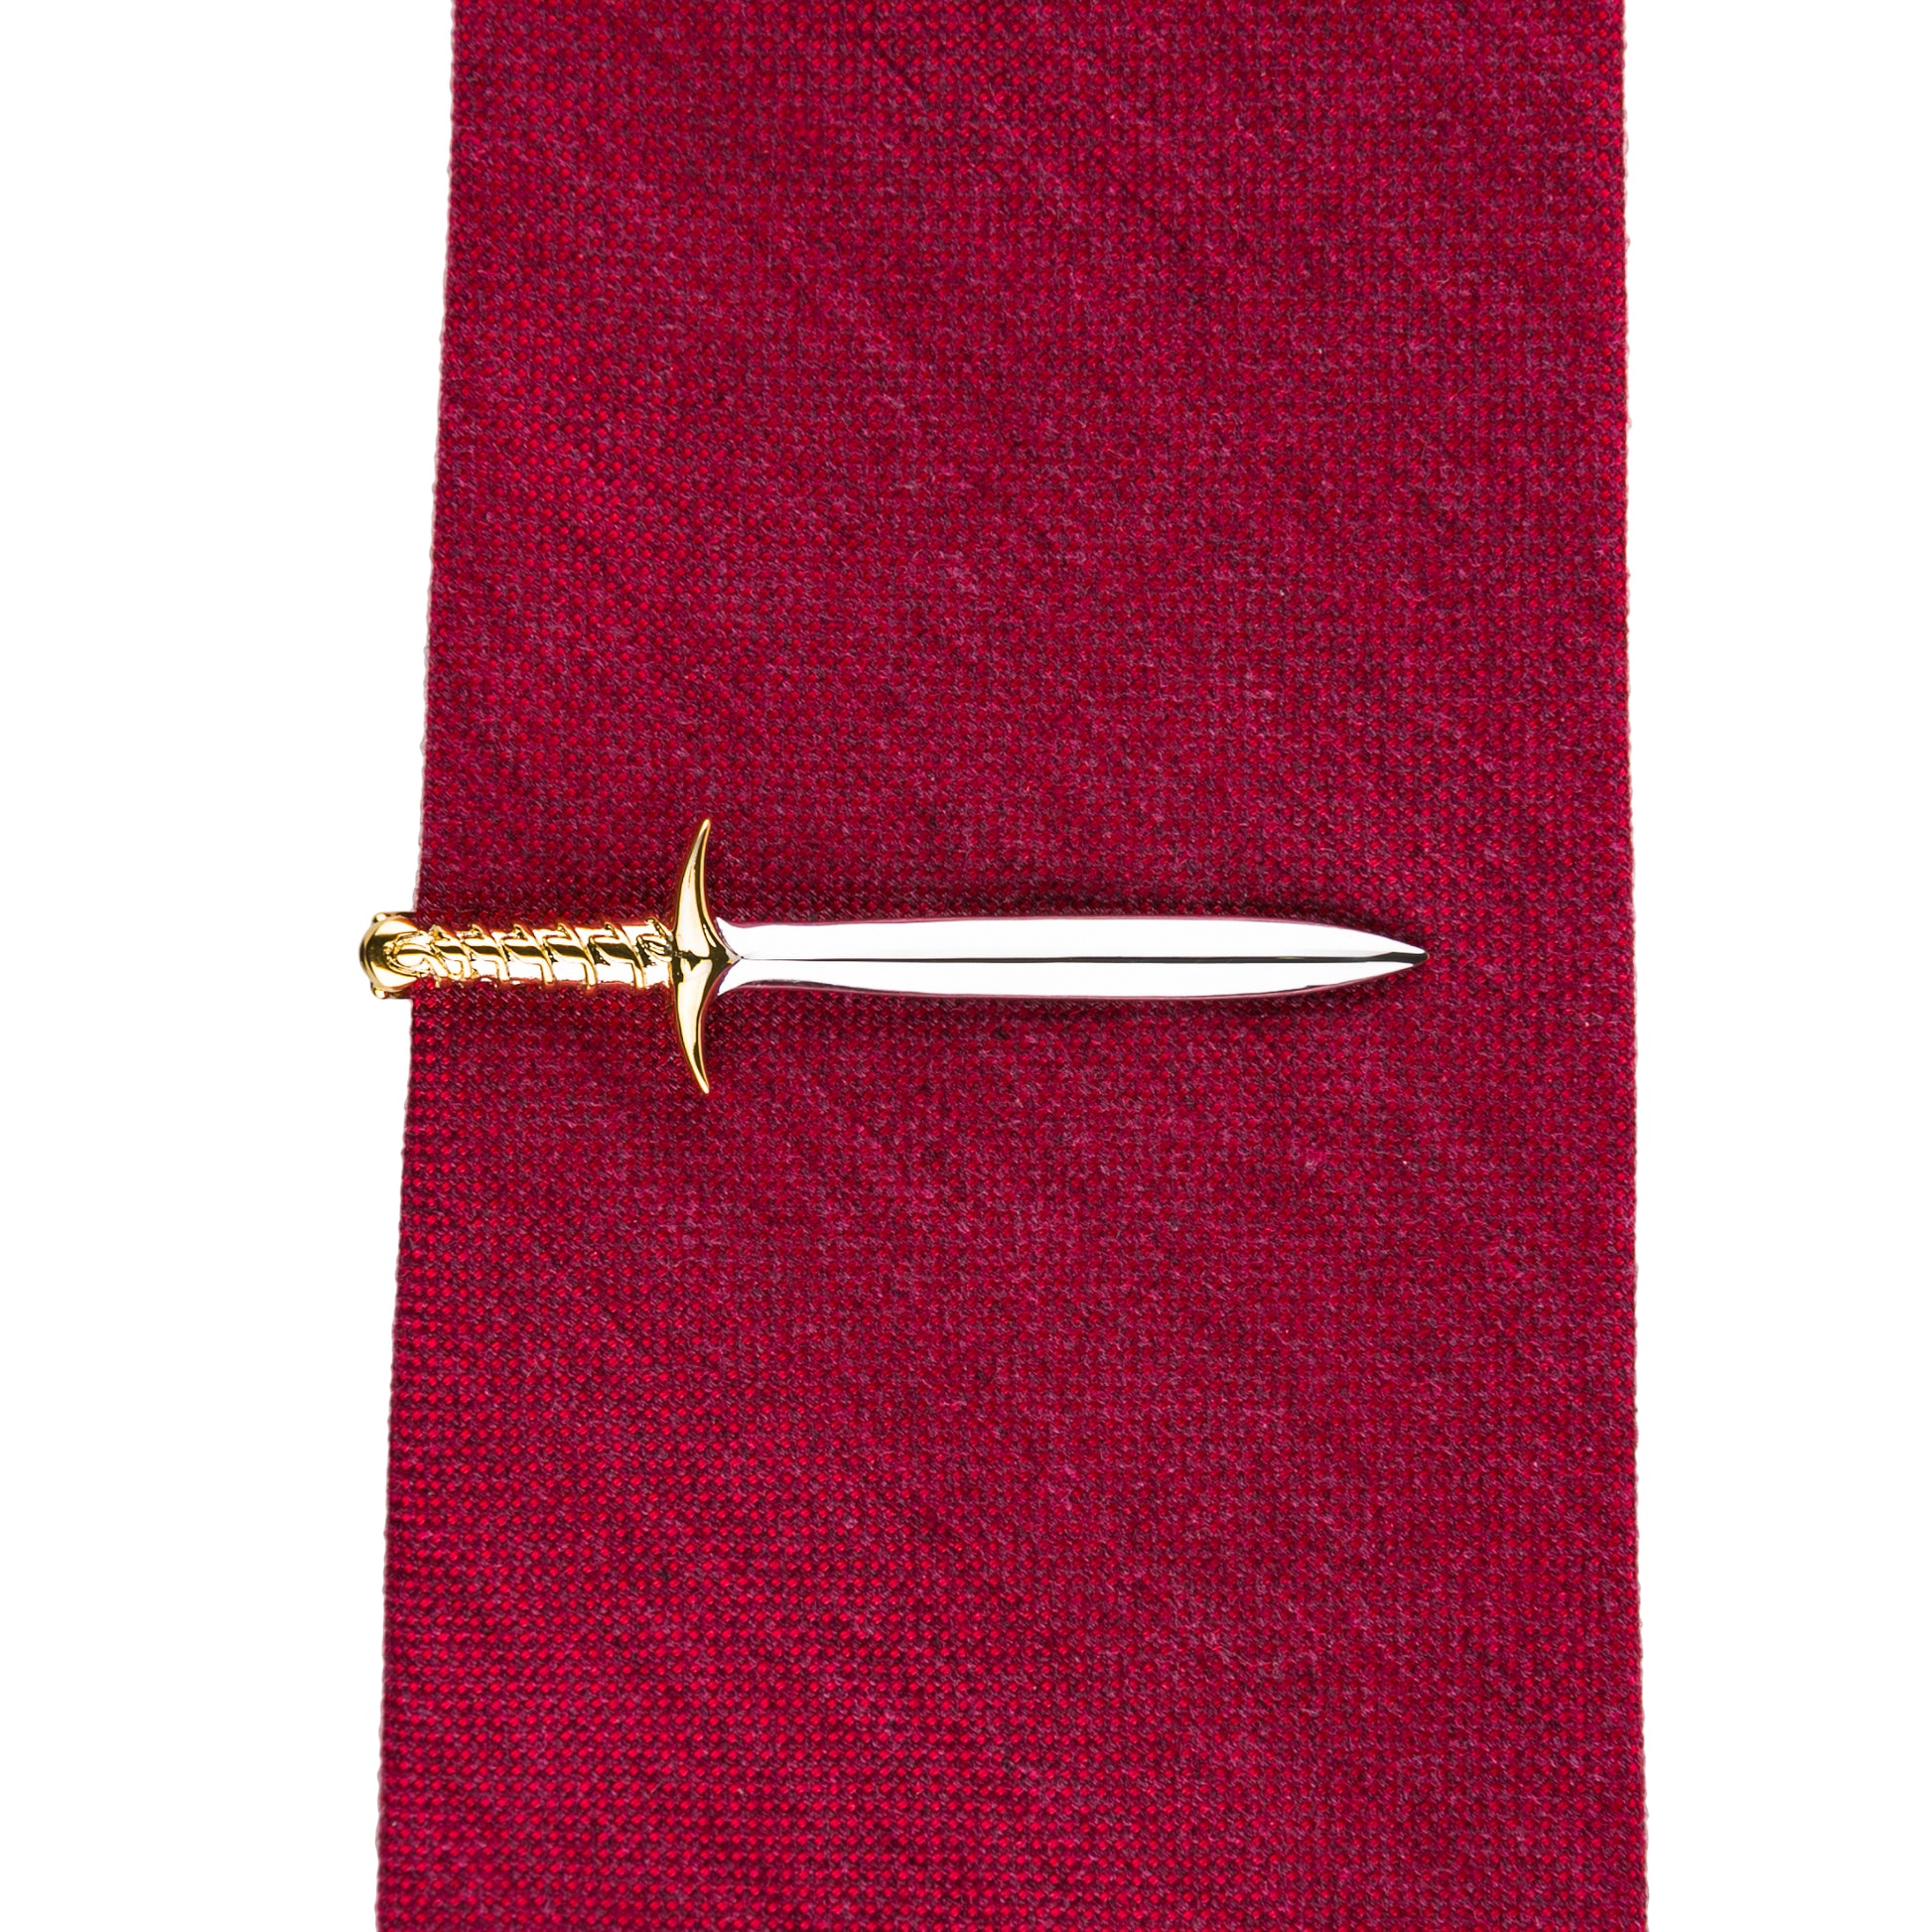 The Halfling's Blade (Tie Clip)